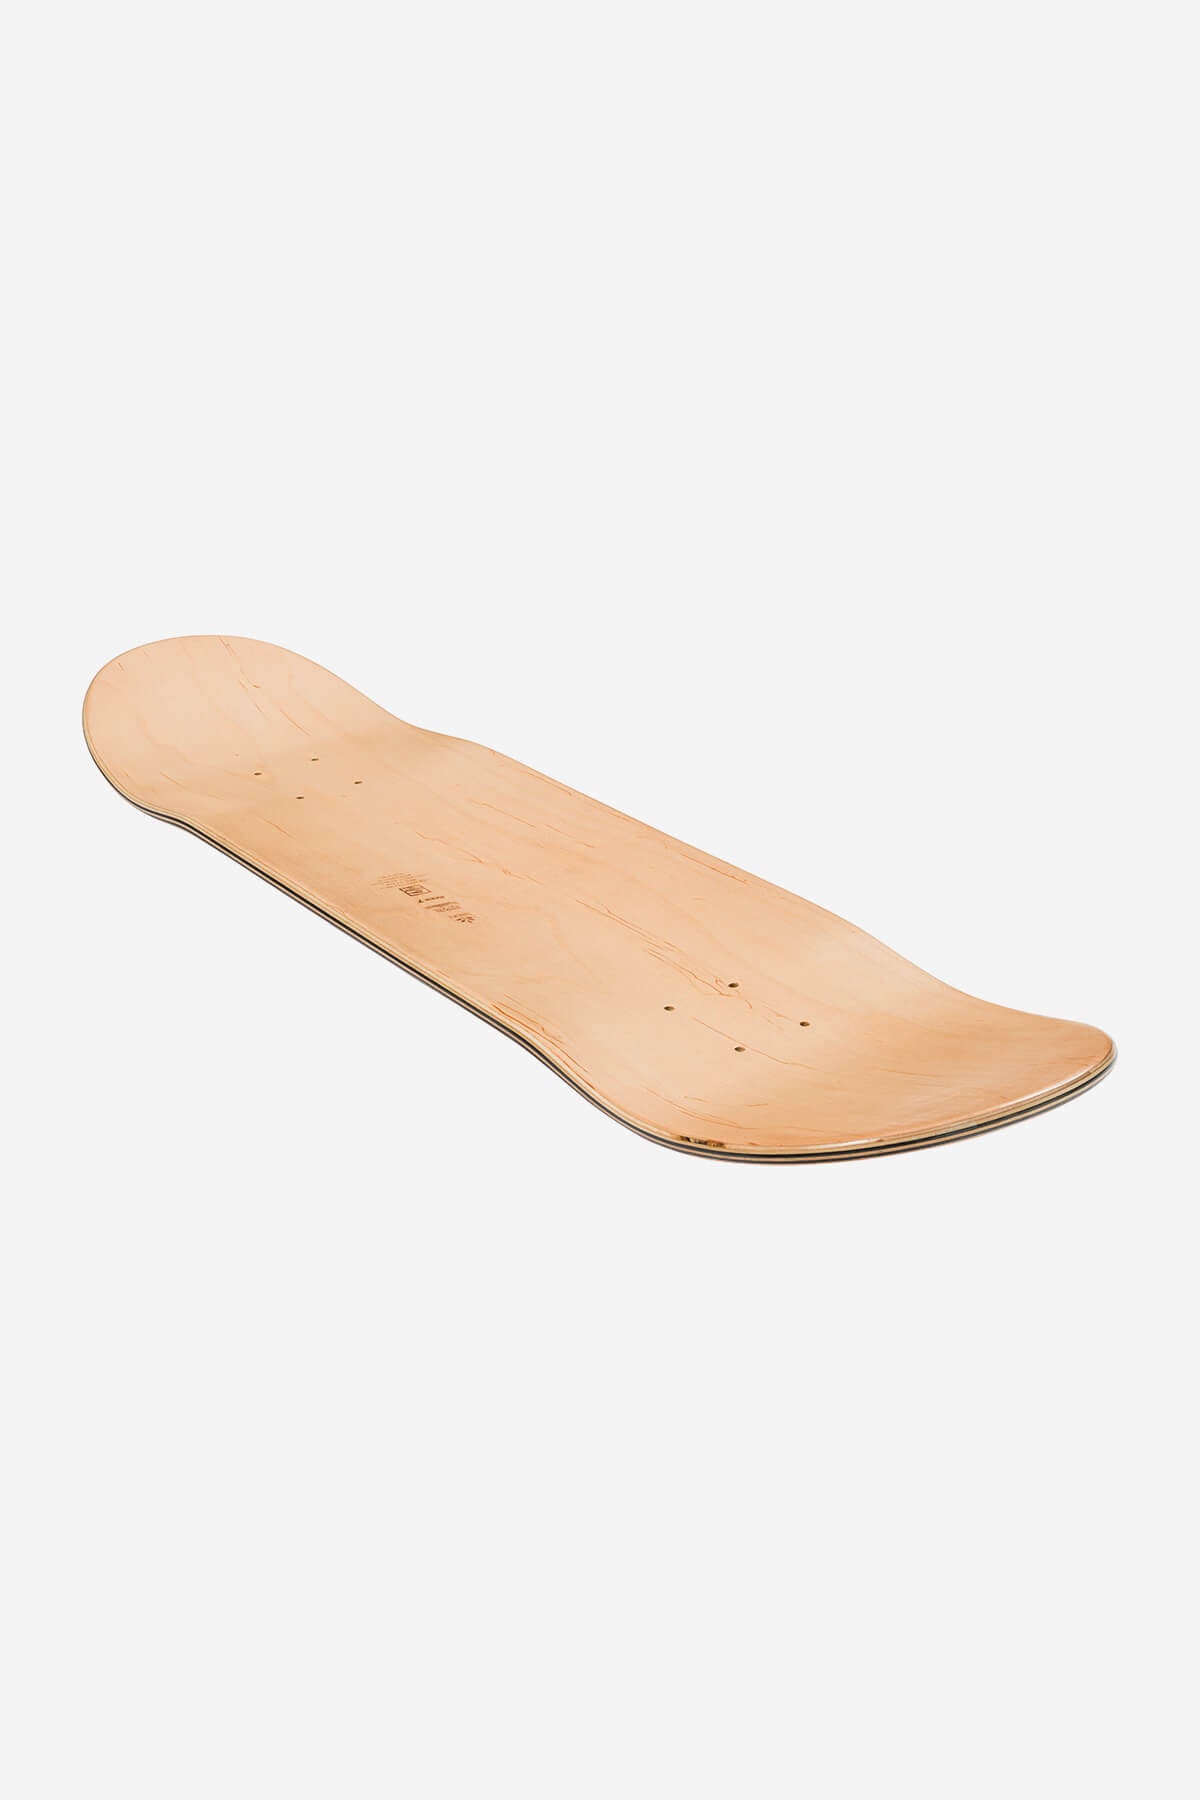 Globe - G1 Linienform - Cinammon - 8,25" Skateboard Deck